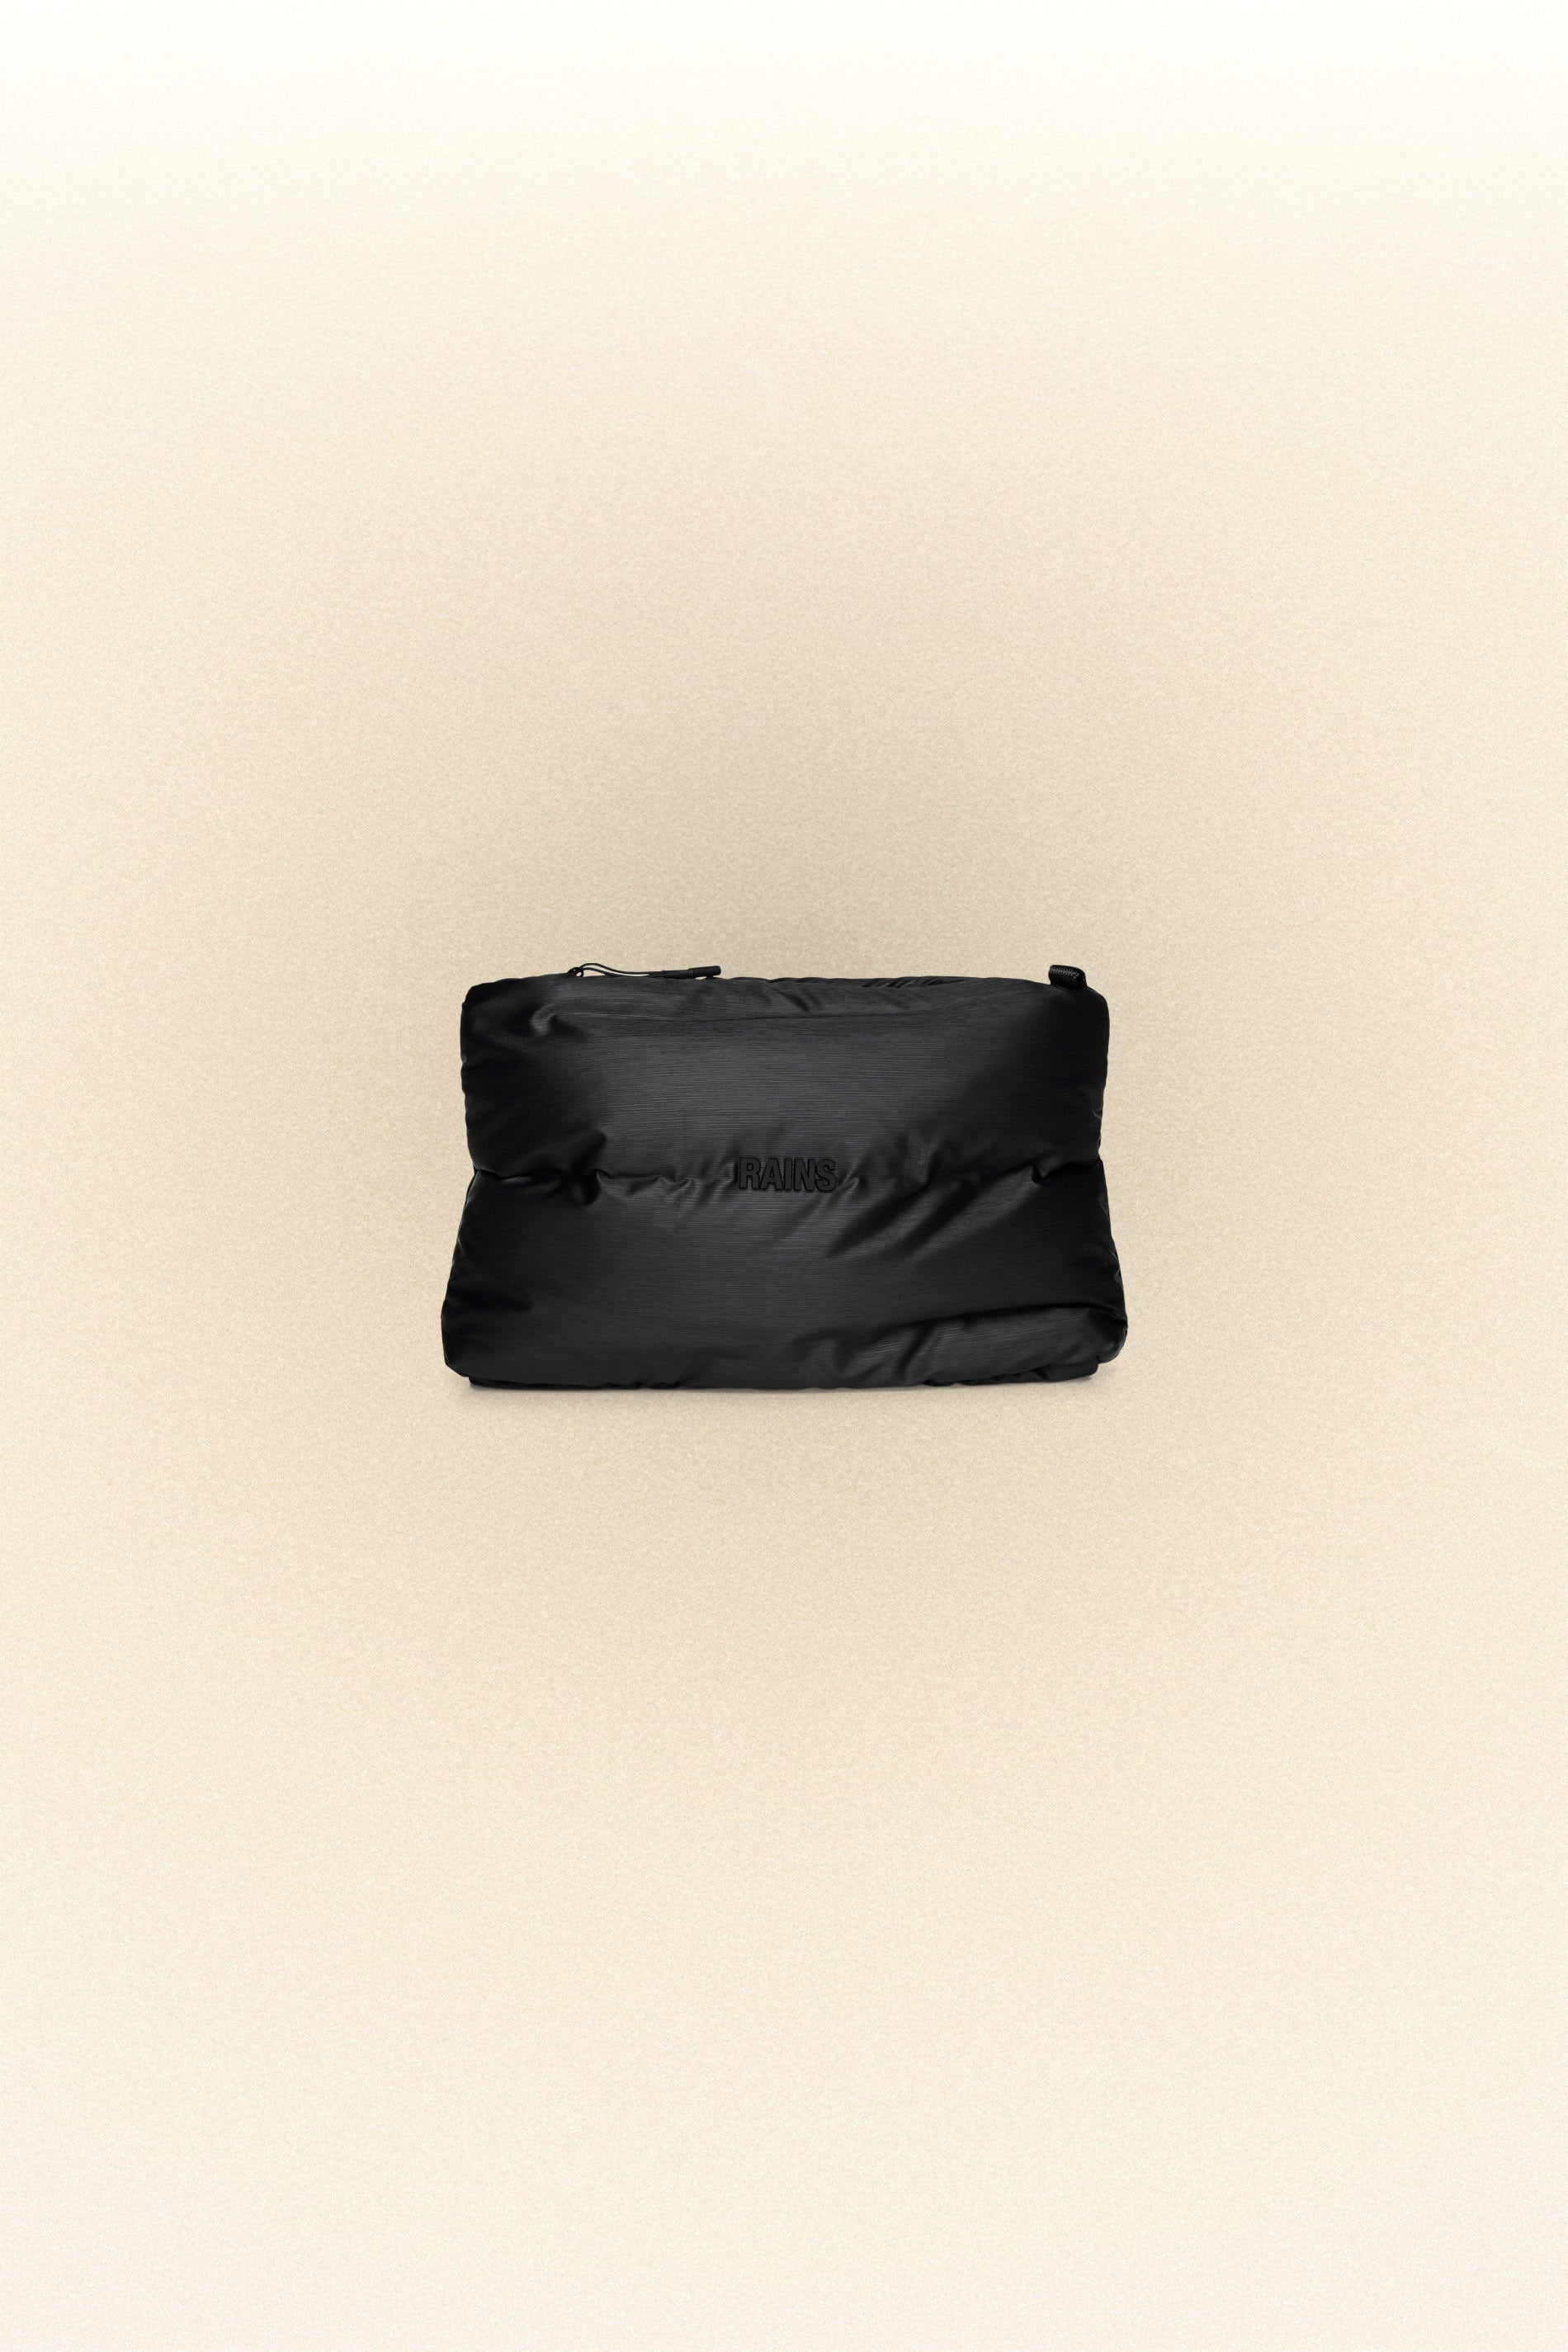 Rains Black Bator Cosmetic Bag 